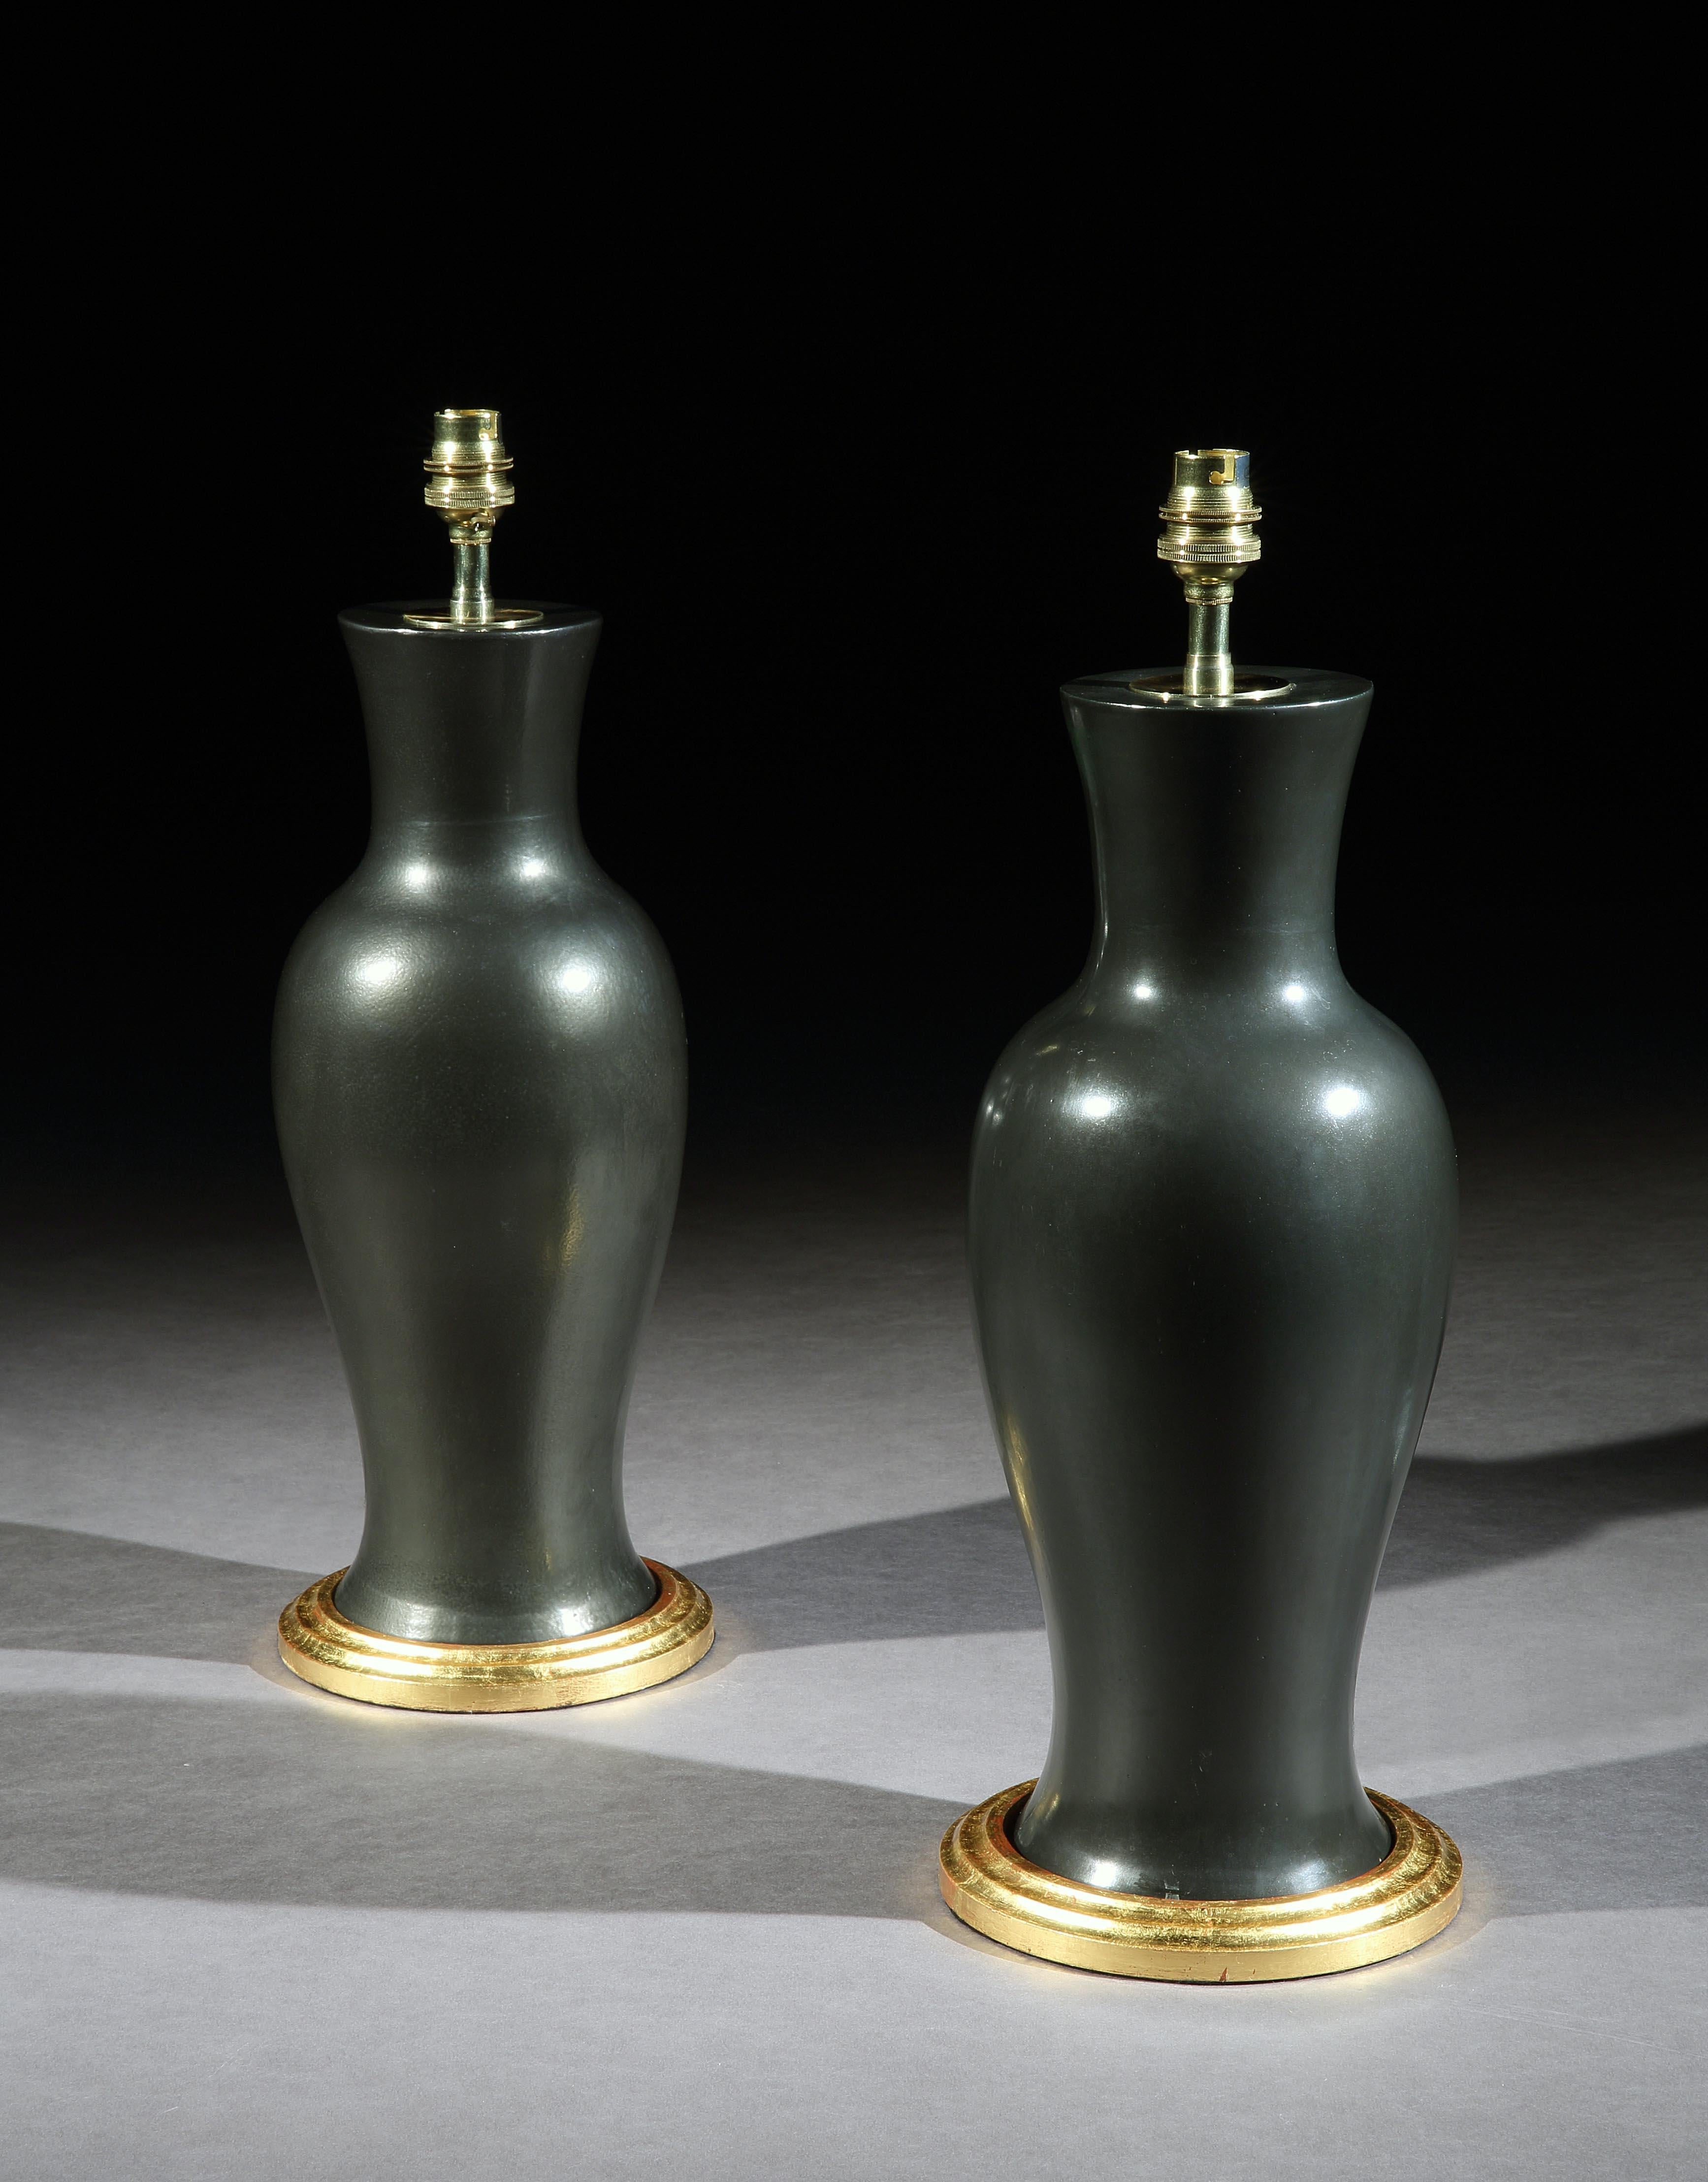 Une paire de vases balustres en porcelaine noire chinoise de forme élégante. Maintenant montées comme lampes de table avec des bases tournées et dorées à la main.

Mesures : Hauteur du vase 41 cm (16 in), y compris la base, sans les accessoires